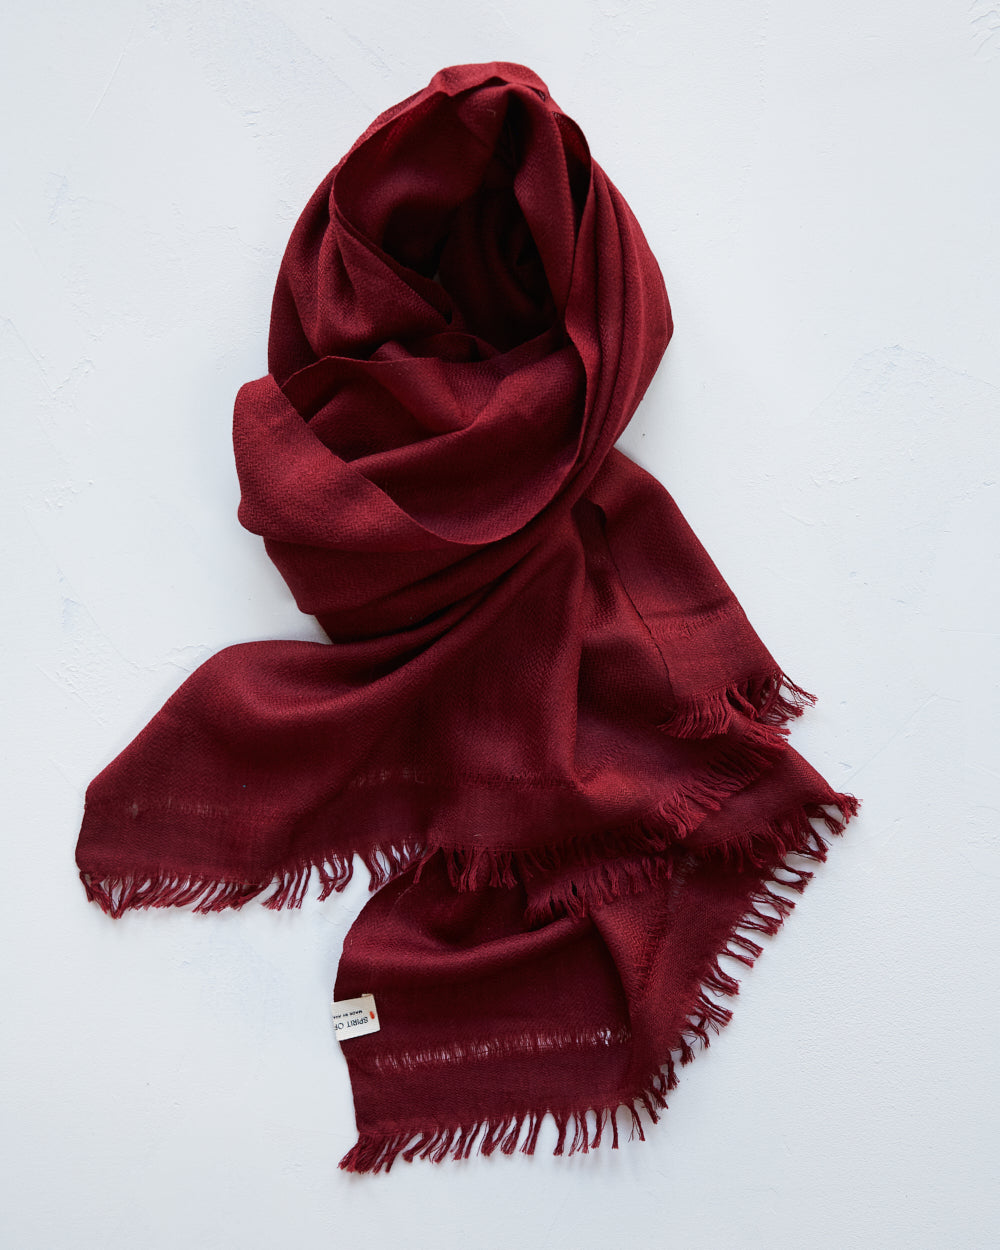 ”Pema” stor sjal i merinoull från Västbengalen